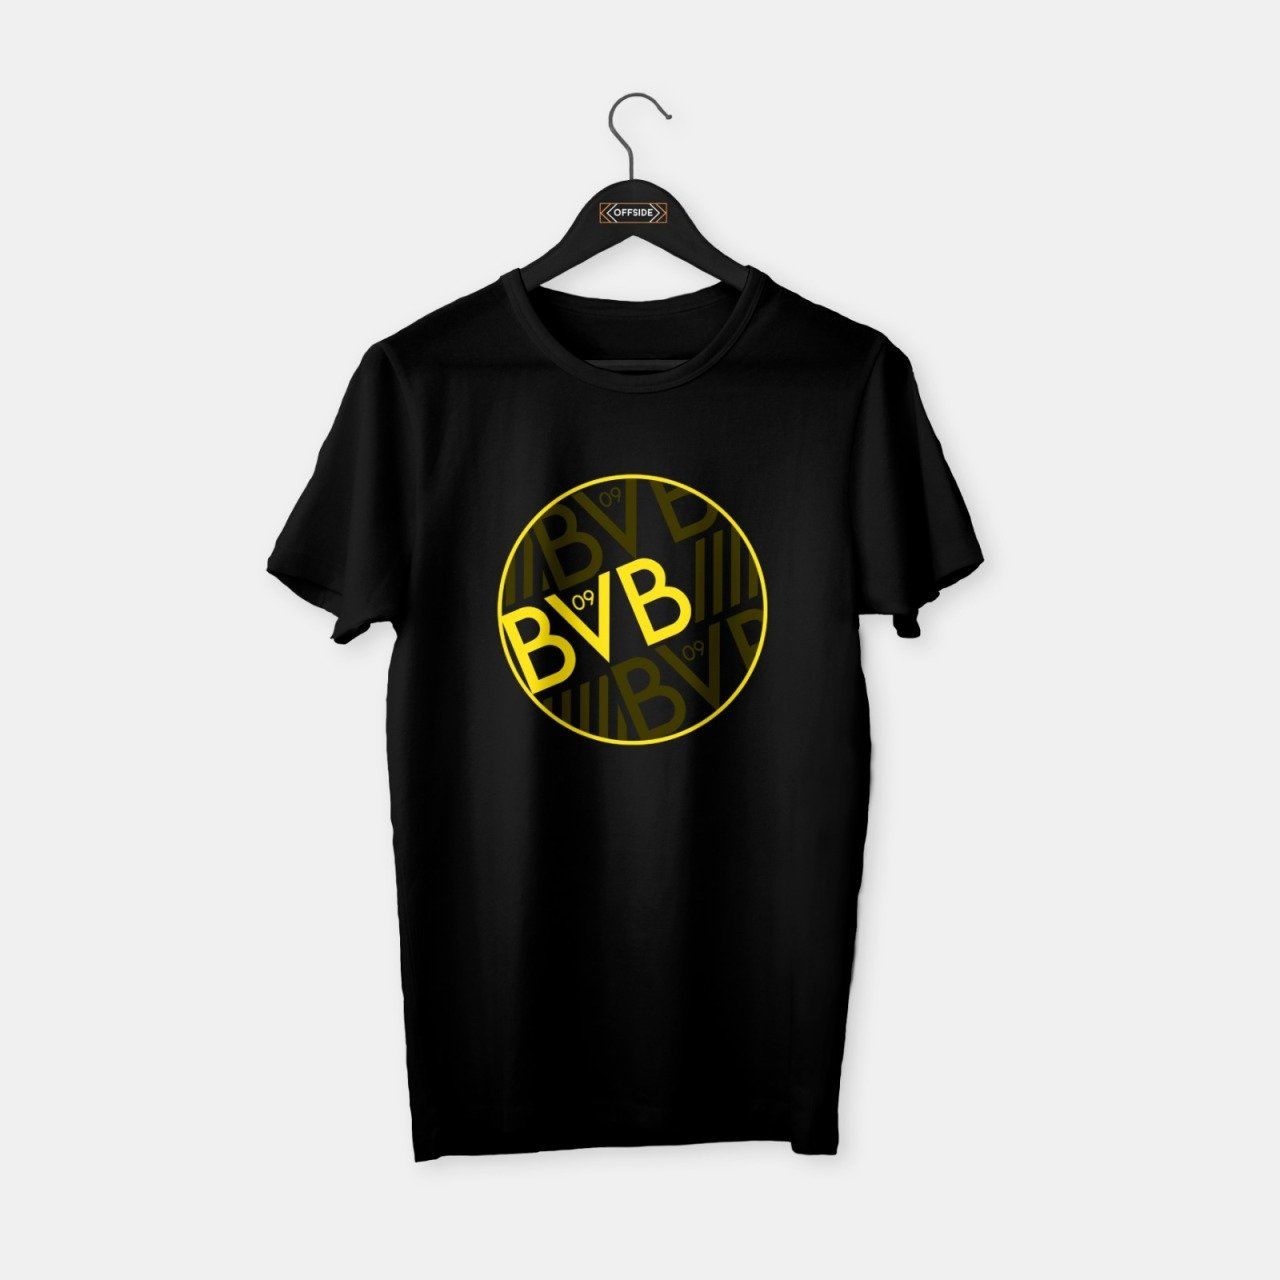 Dortmund - BVB T-shirt